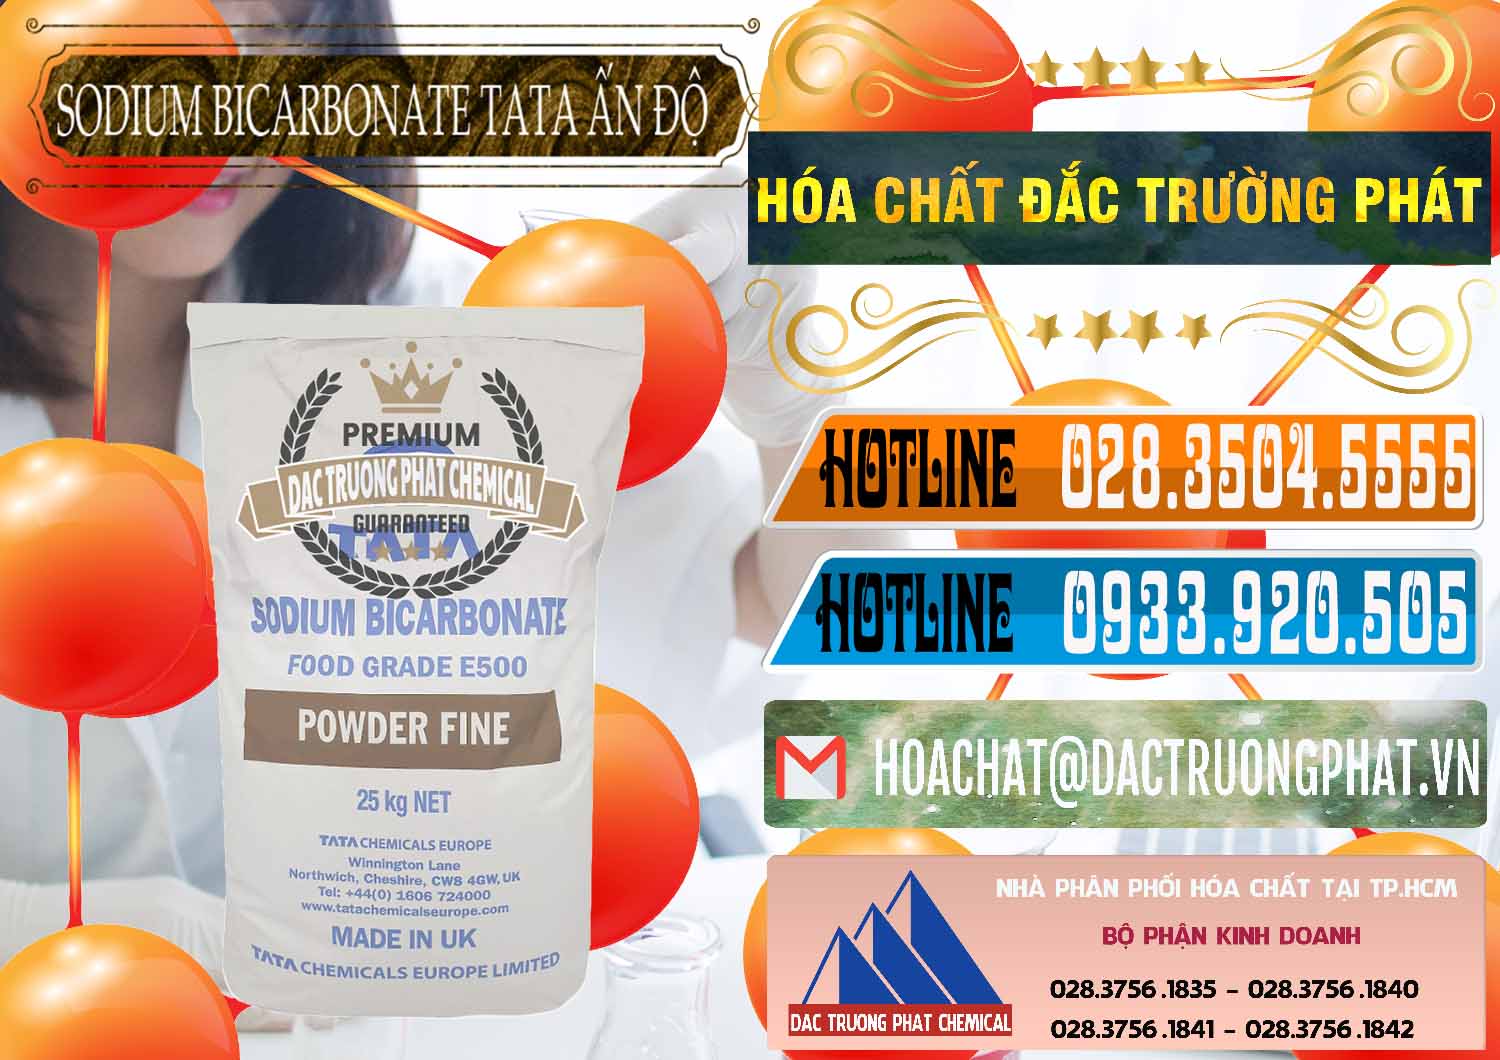 Nơi phân phối - bán Sodium Bicarbonate – Bicar NaHCO3 E500 Thực Phẩm Food Grade Tata Ấn Độ India - 0261 - Cty chuyên kinh doanh _ cung cấp hóa chất tại TP.HCM - stmp.net